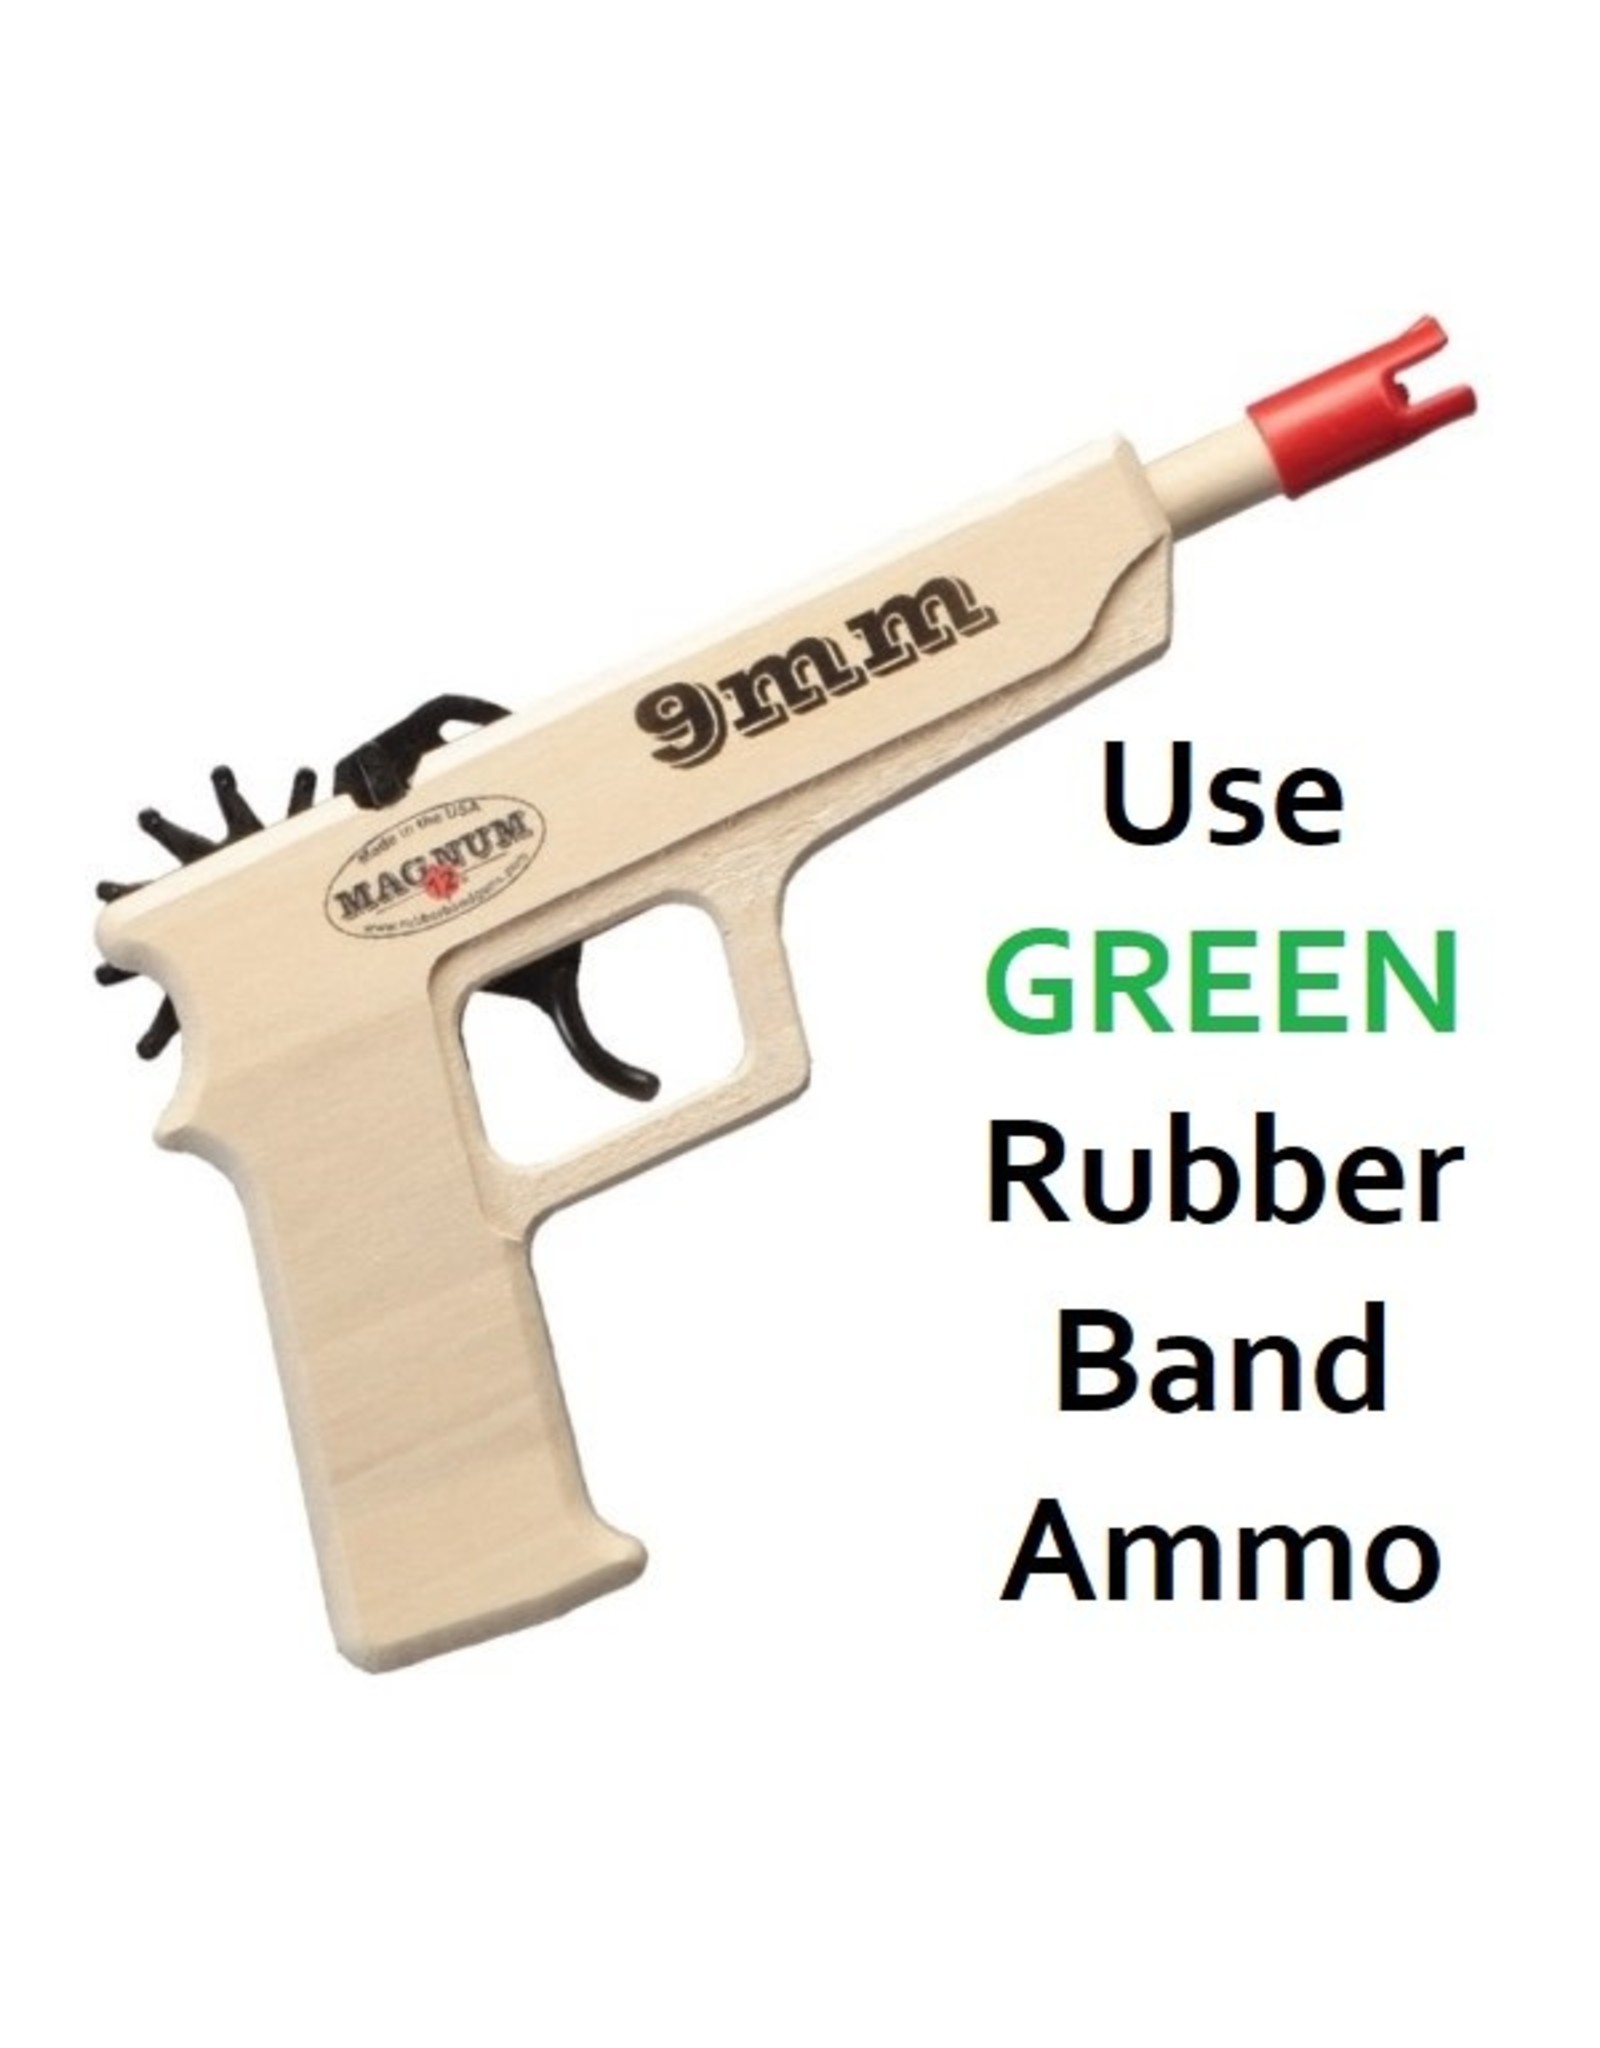 9MM Pistol Rubber Band Gun